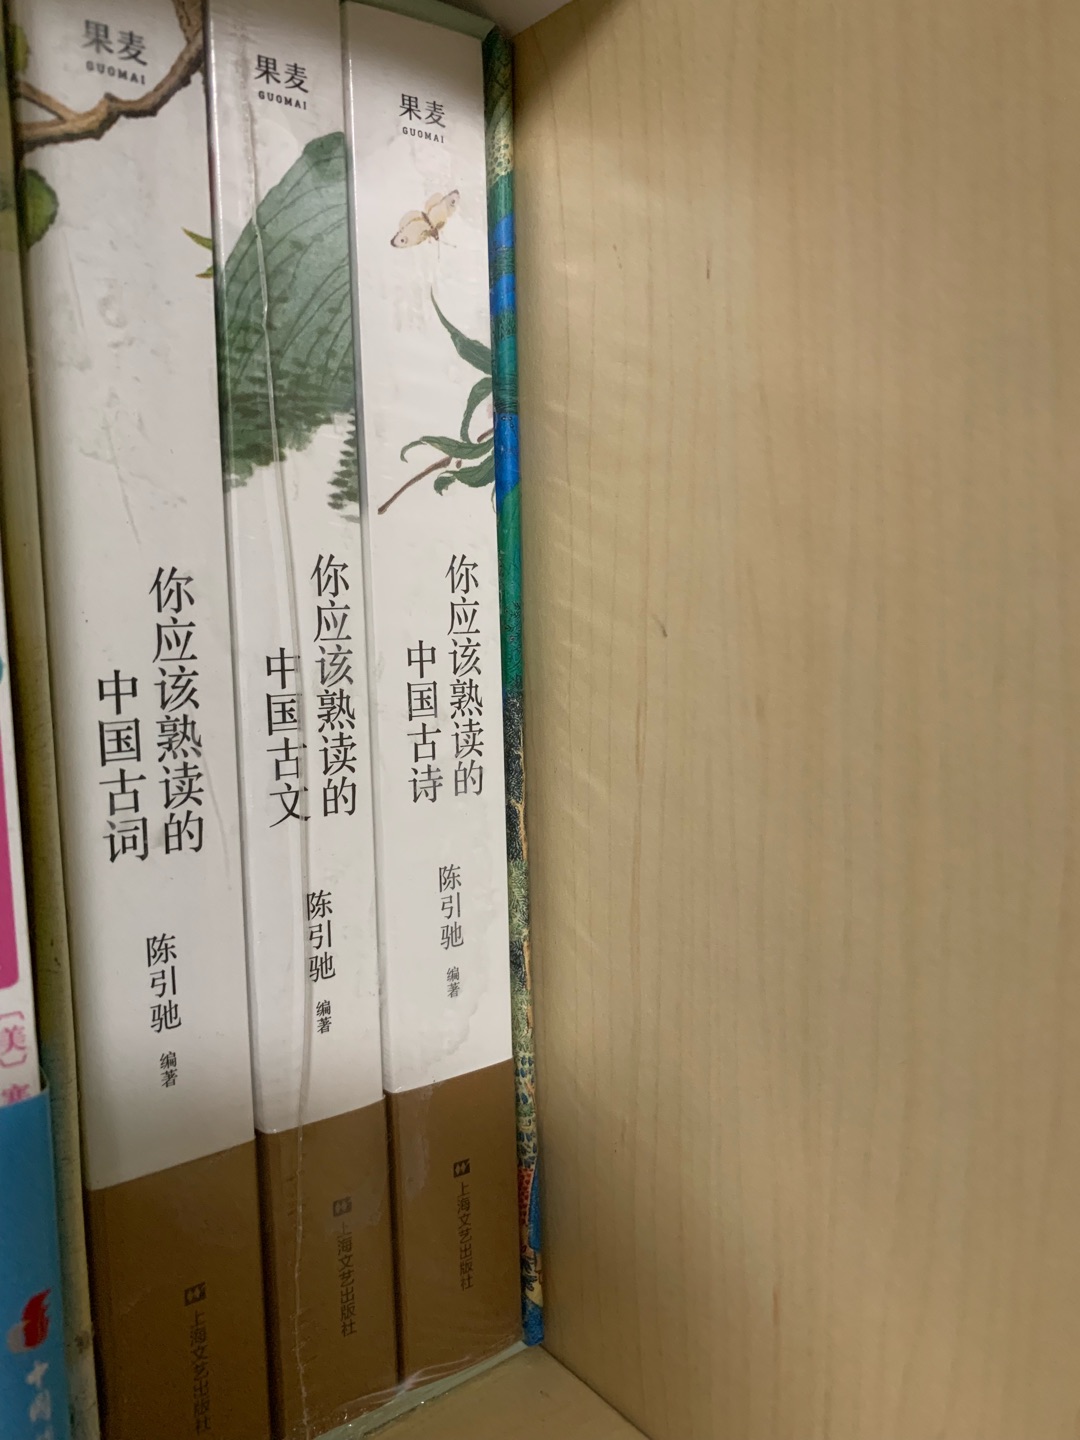 印刷非常精美，配图也很好。给孩子买的，希望他能在古诗词里找到中华文化之美。